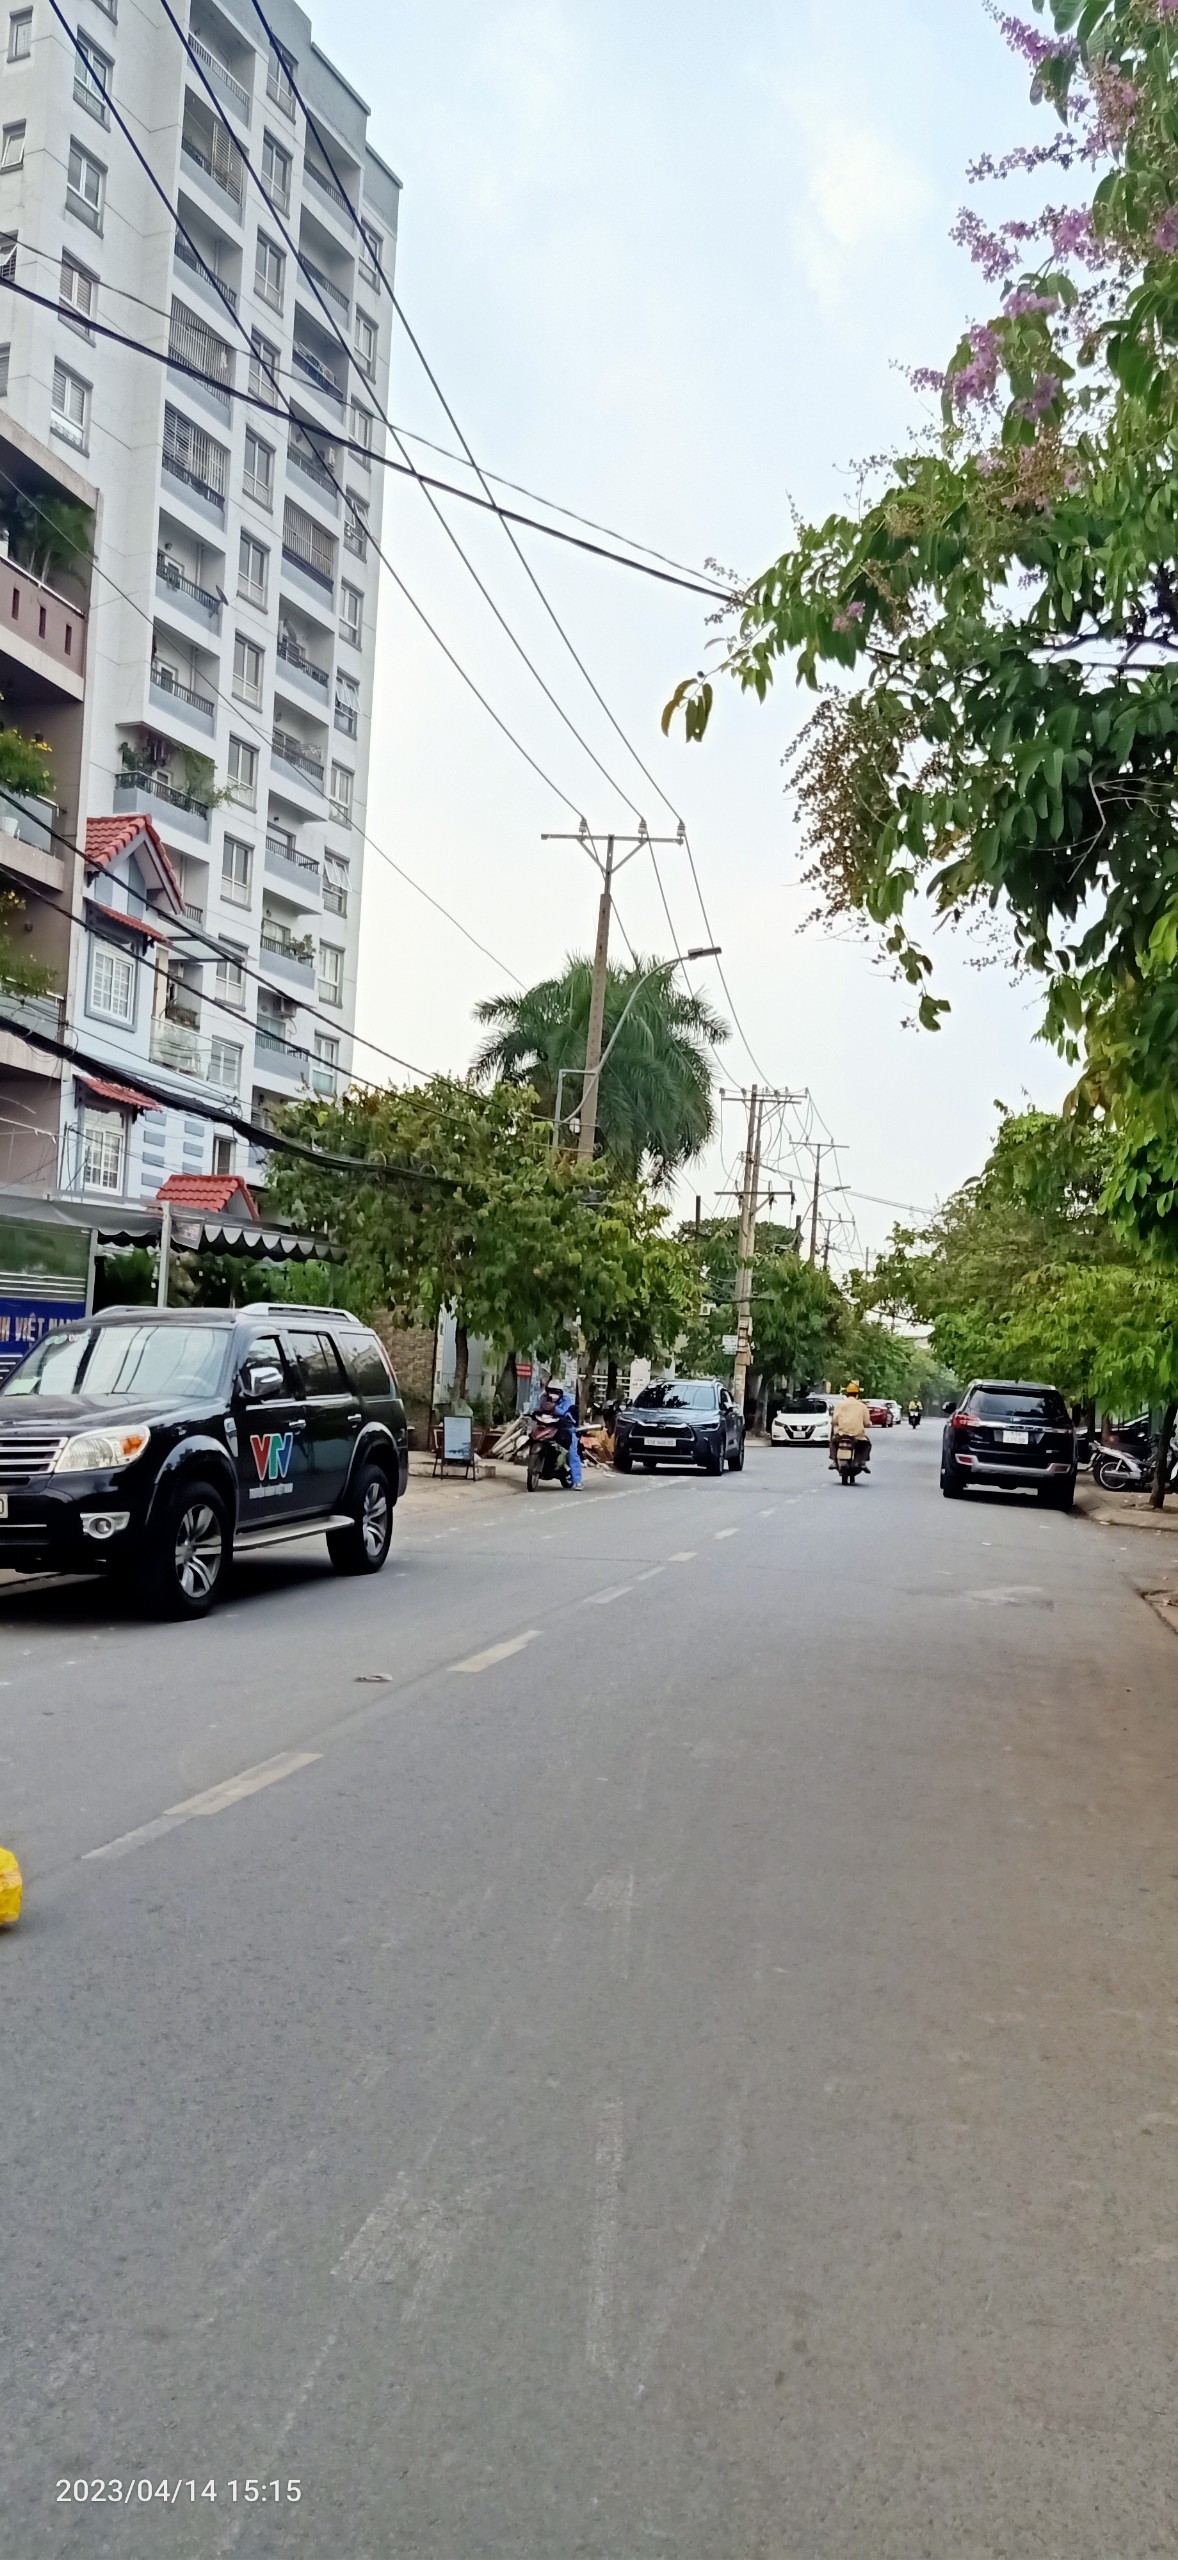 Bán lô đất trống Nguyễn Văn Dung, GòVấp, gần chung cư truyền hình VTV cáp, 9x18.5m, HXH 6m, giá 13tỷ, LH0937205202